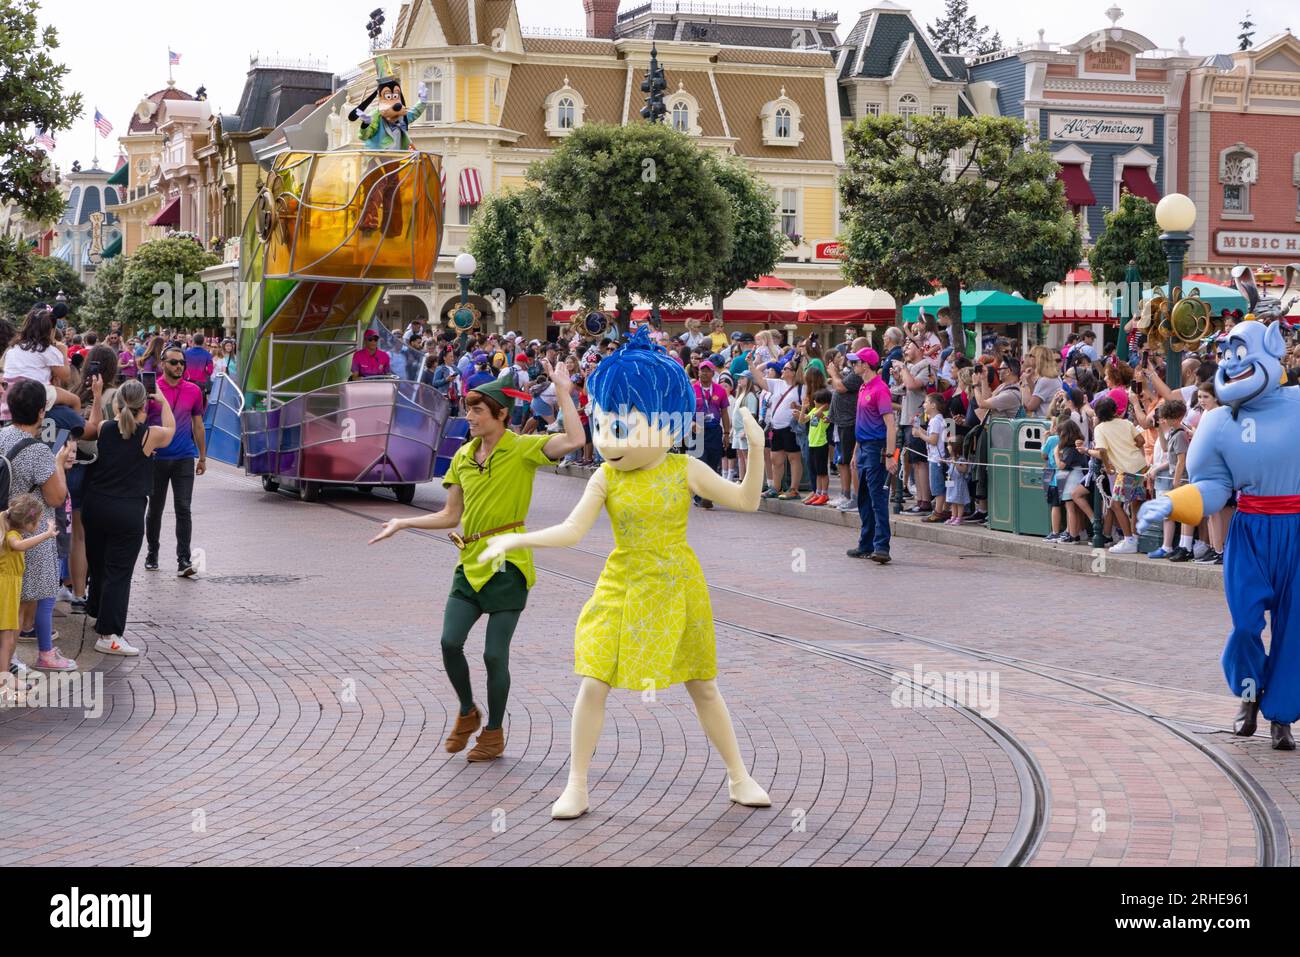 Disneyland Paris - la Parade Disney avec les personnages disney Peter Pan, Joy et le Génie dansant devant les visiteurs ; Disneyland Paris, France Banque D'Images